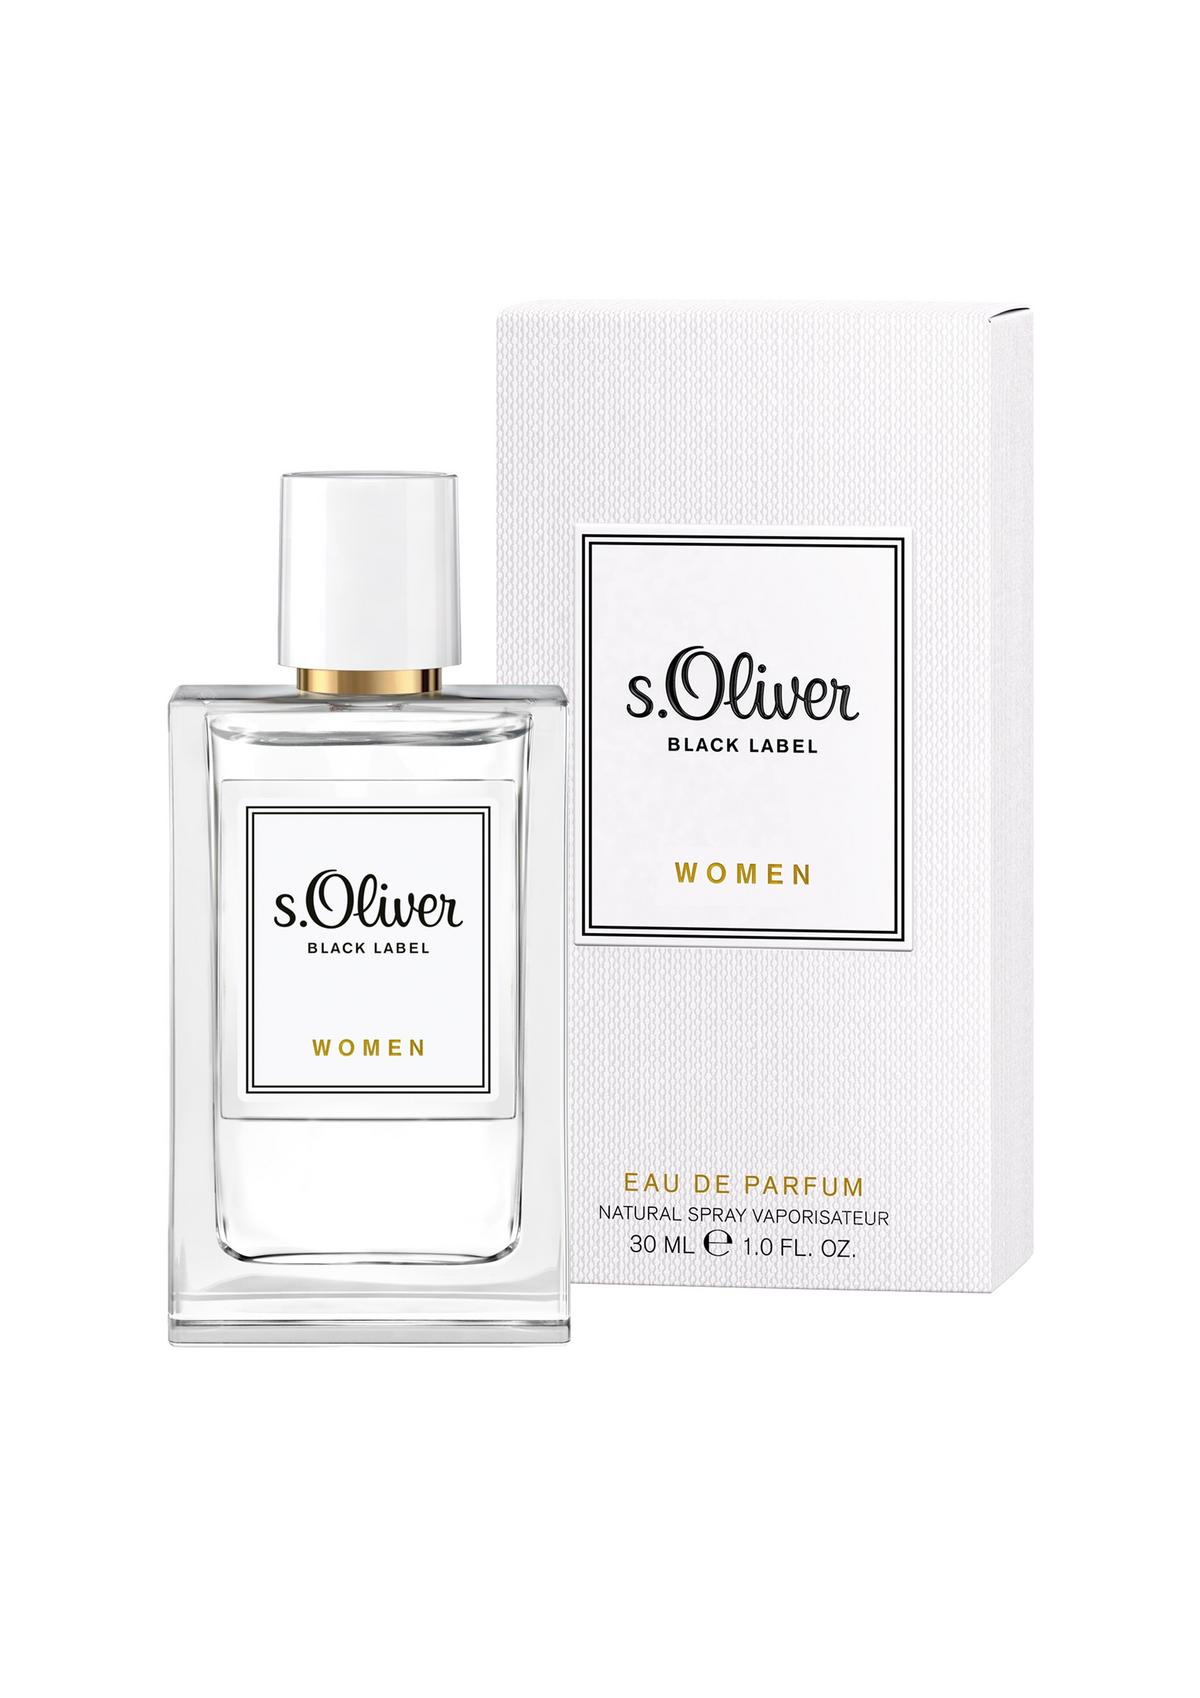 s.Oliver Black Label Woman eau de parfum 30 ml